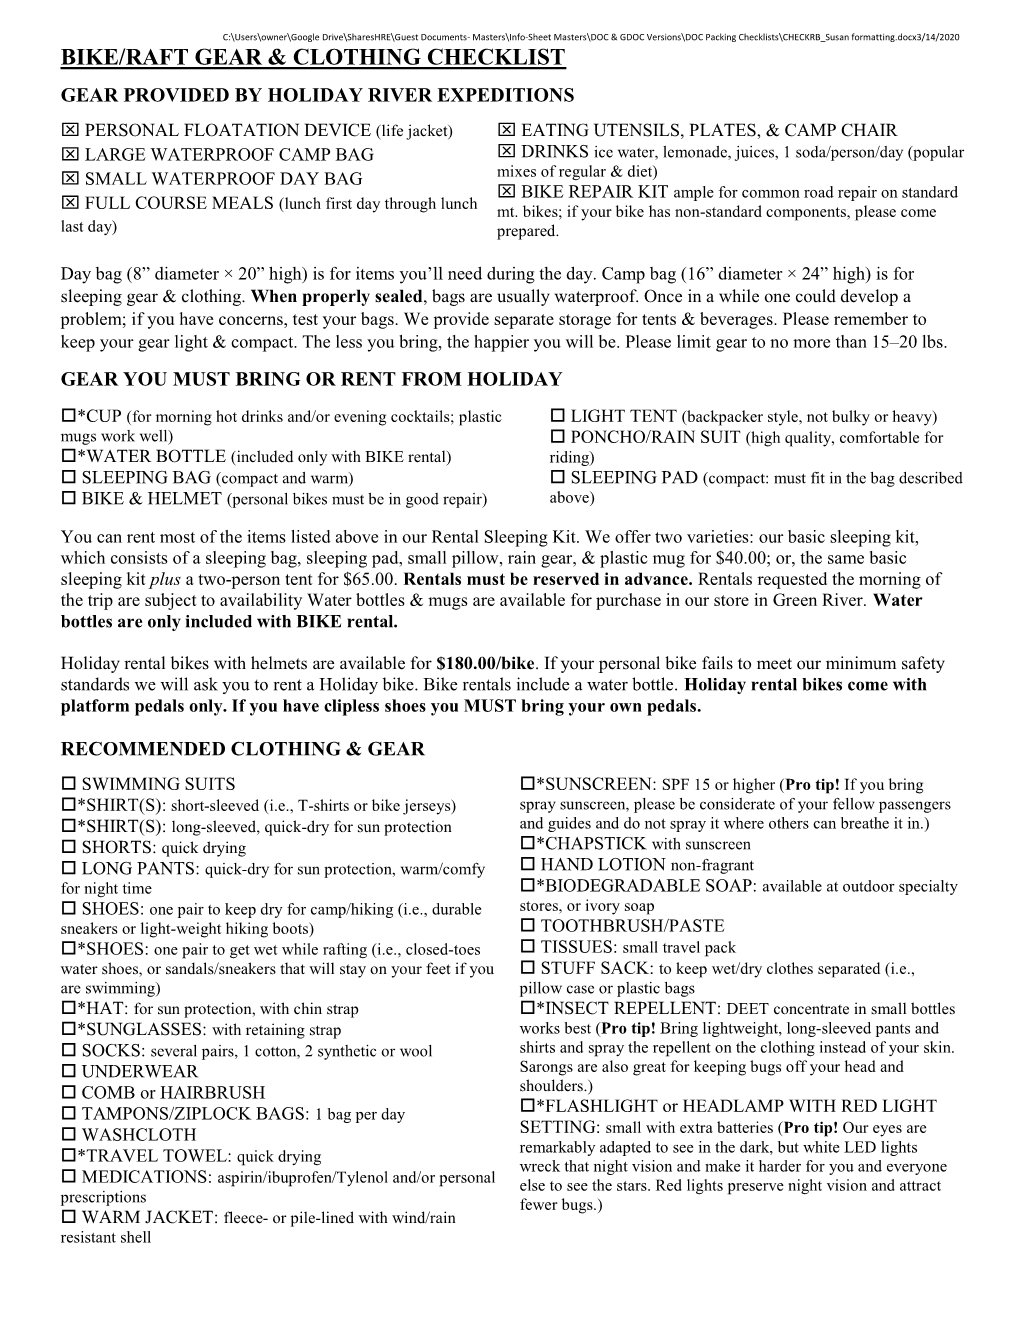 Bike/Raft Gear & Clothing Checklist